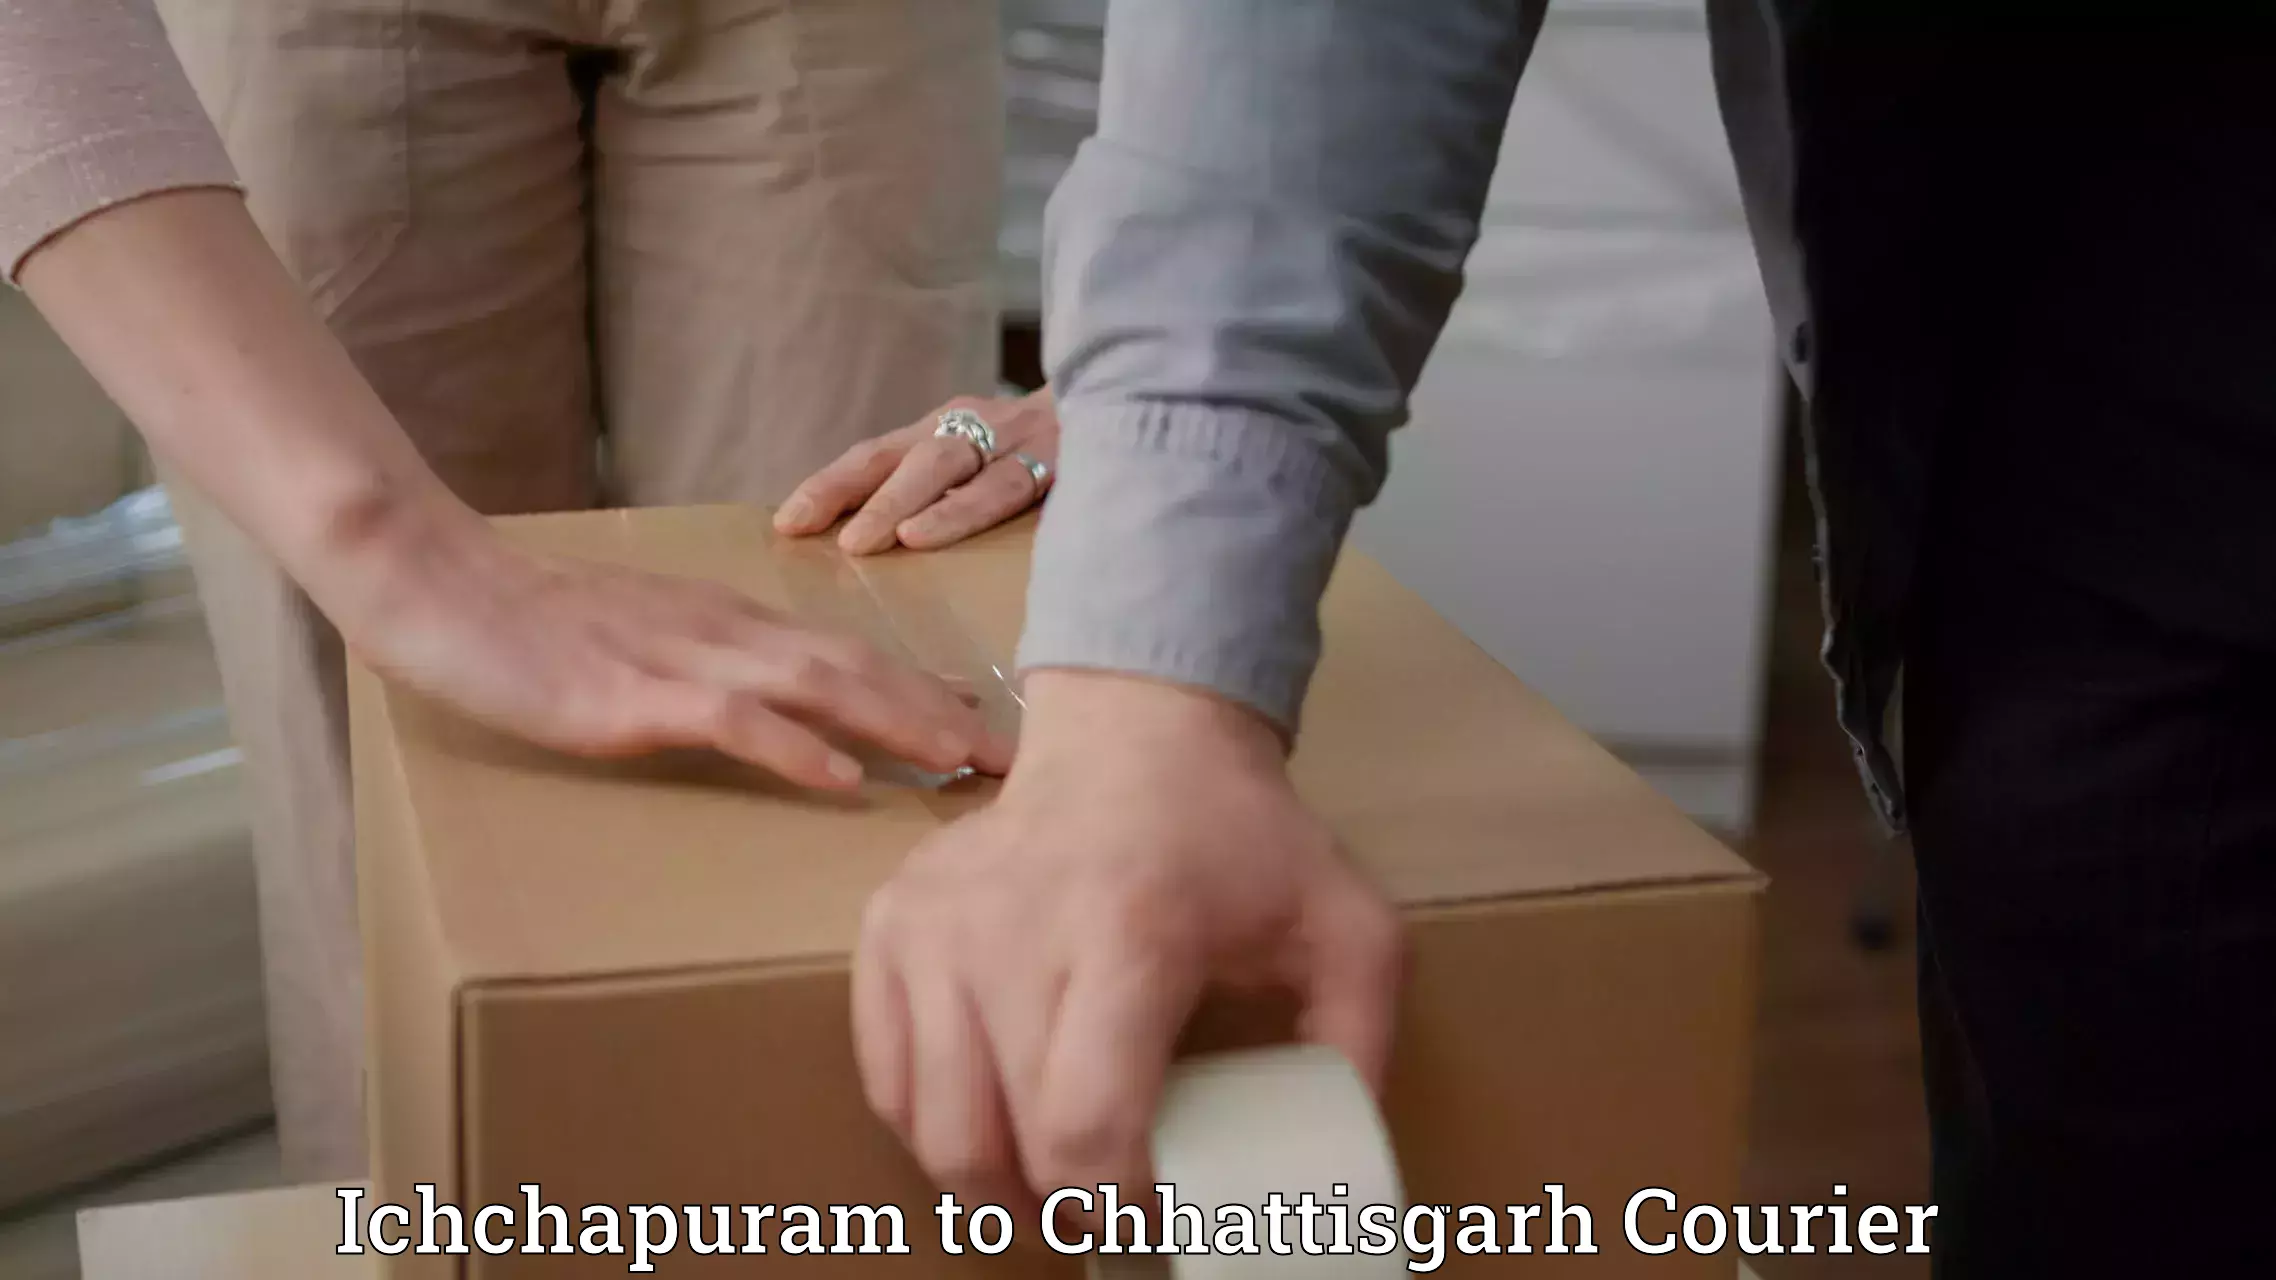 Fast delivery service Ichchapuram to Ratanpur